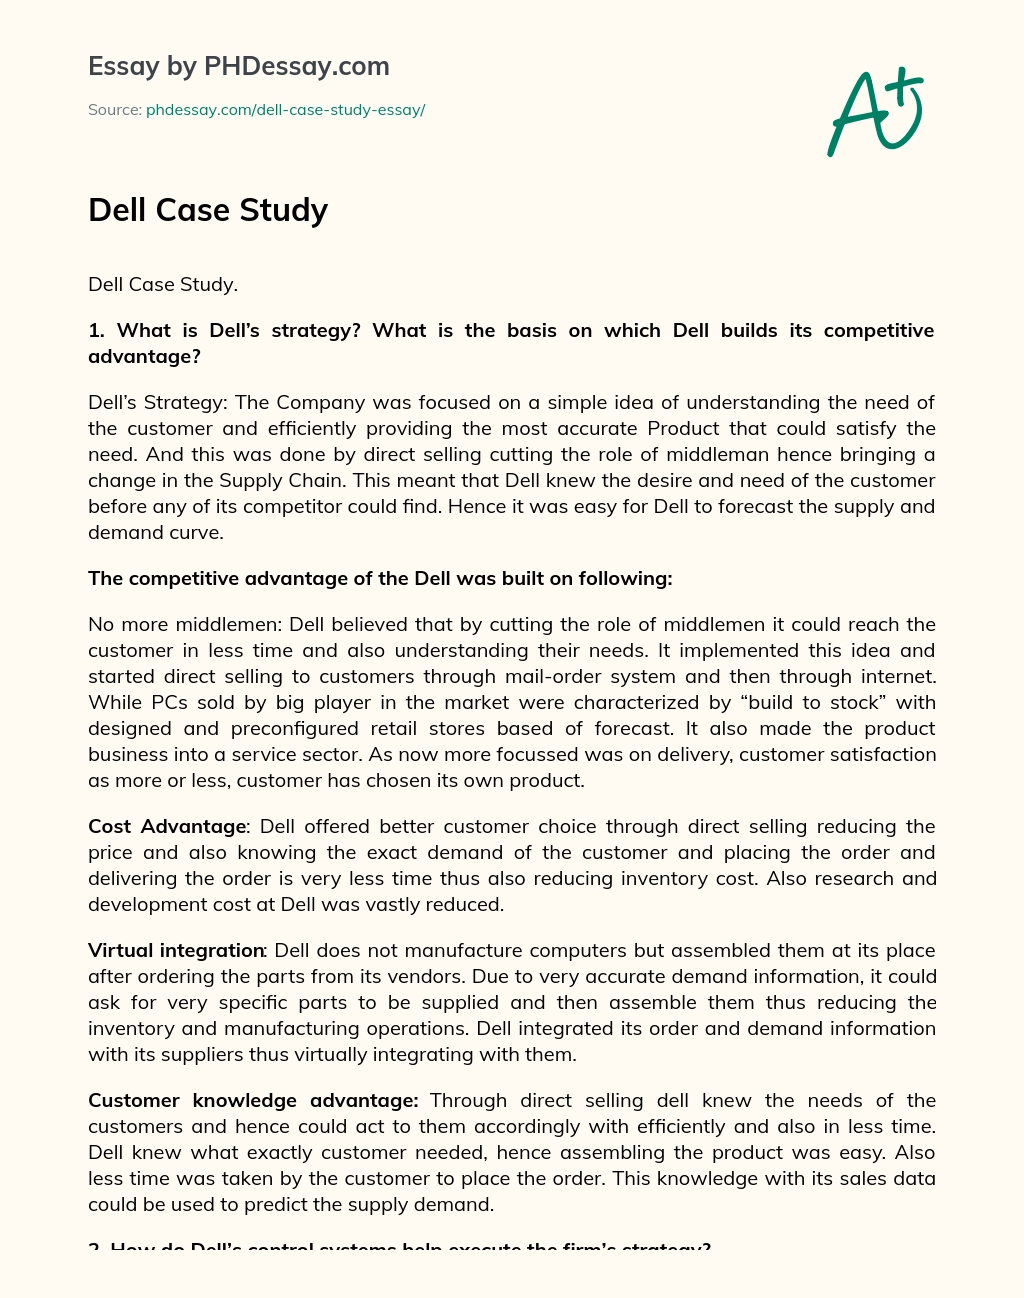 Dell Case Study essay